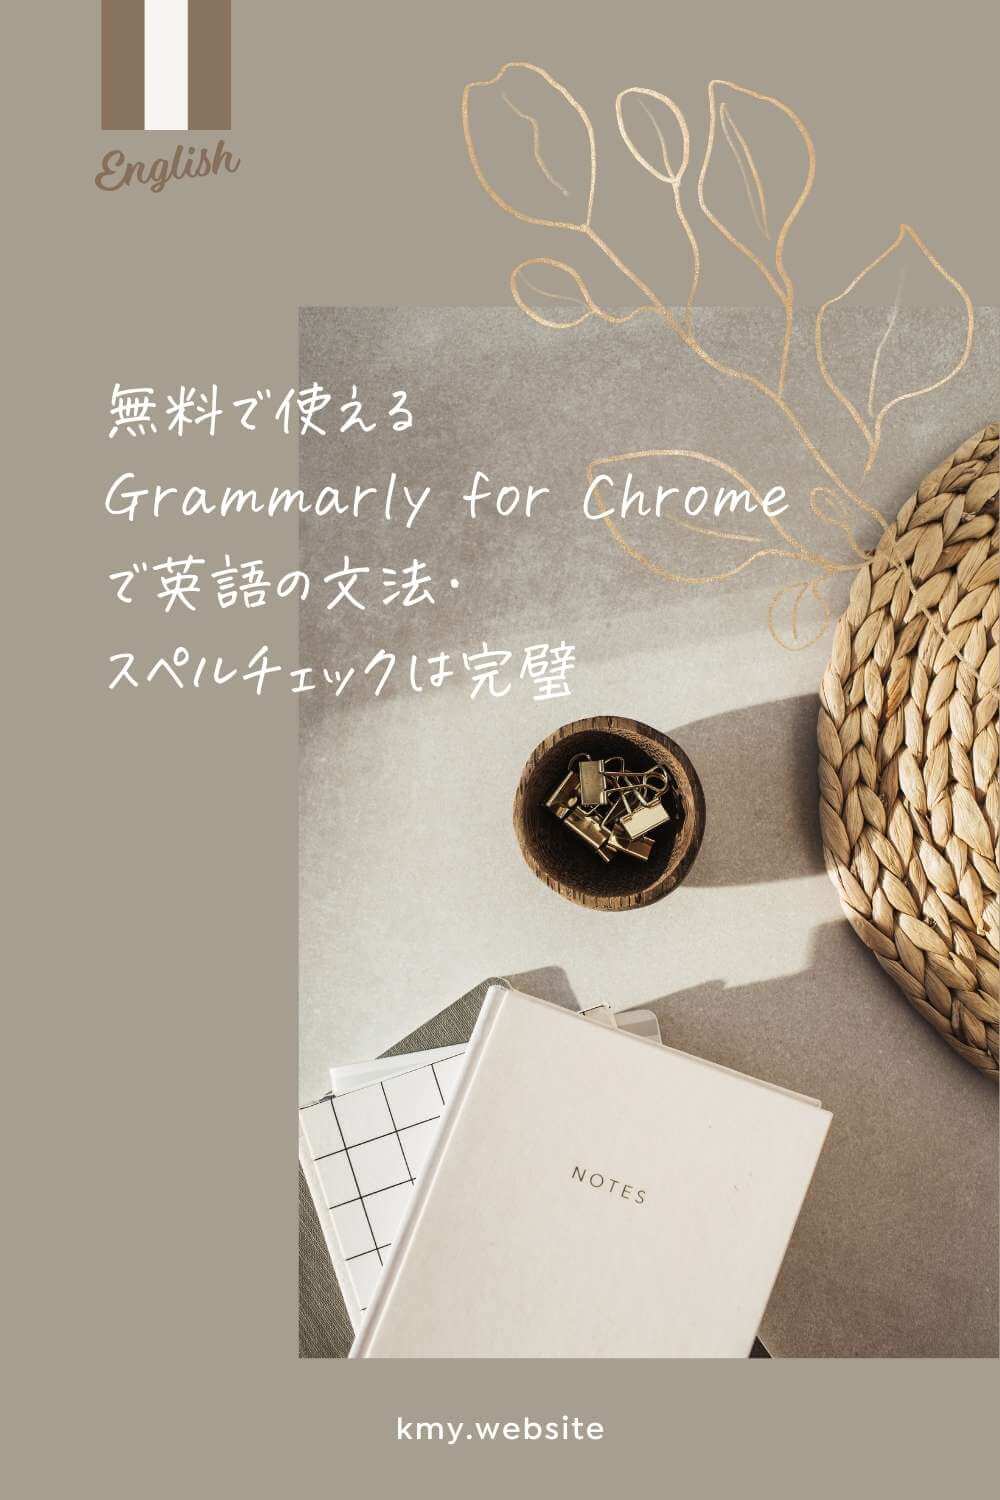 無料で使えるGrammarly for Chromeで文法・スペルチェックは完璧【英語メッセージで失敗しない】